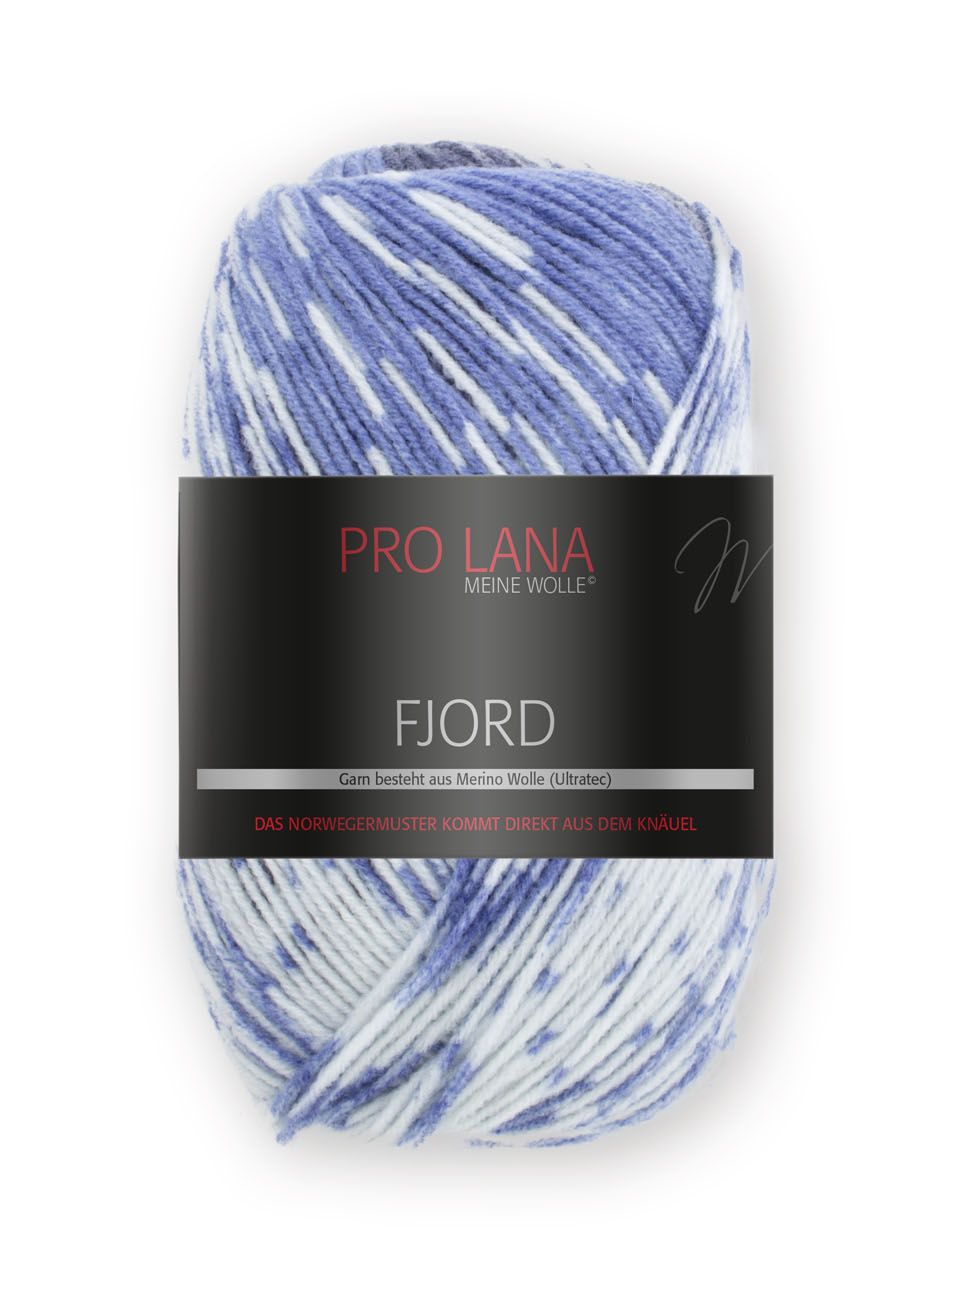 Pro Lana Fjord 100g - Blau / Grau / Weiß 84